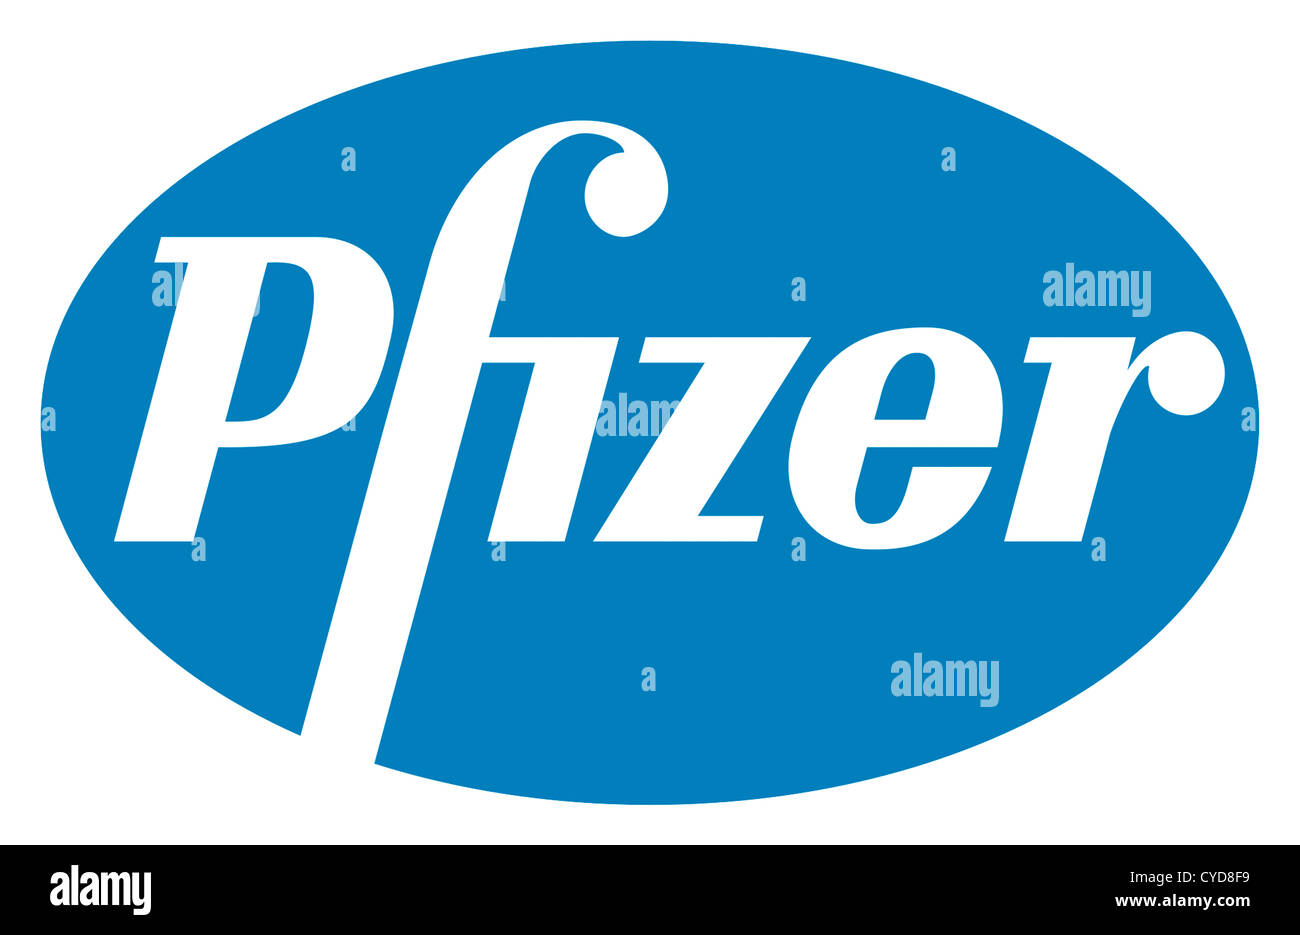 Logotipo de la empresa farmacéutica Pfizer estadounidense con sede en Nueva York. Foto de stock